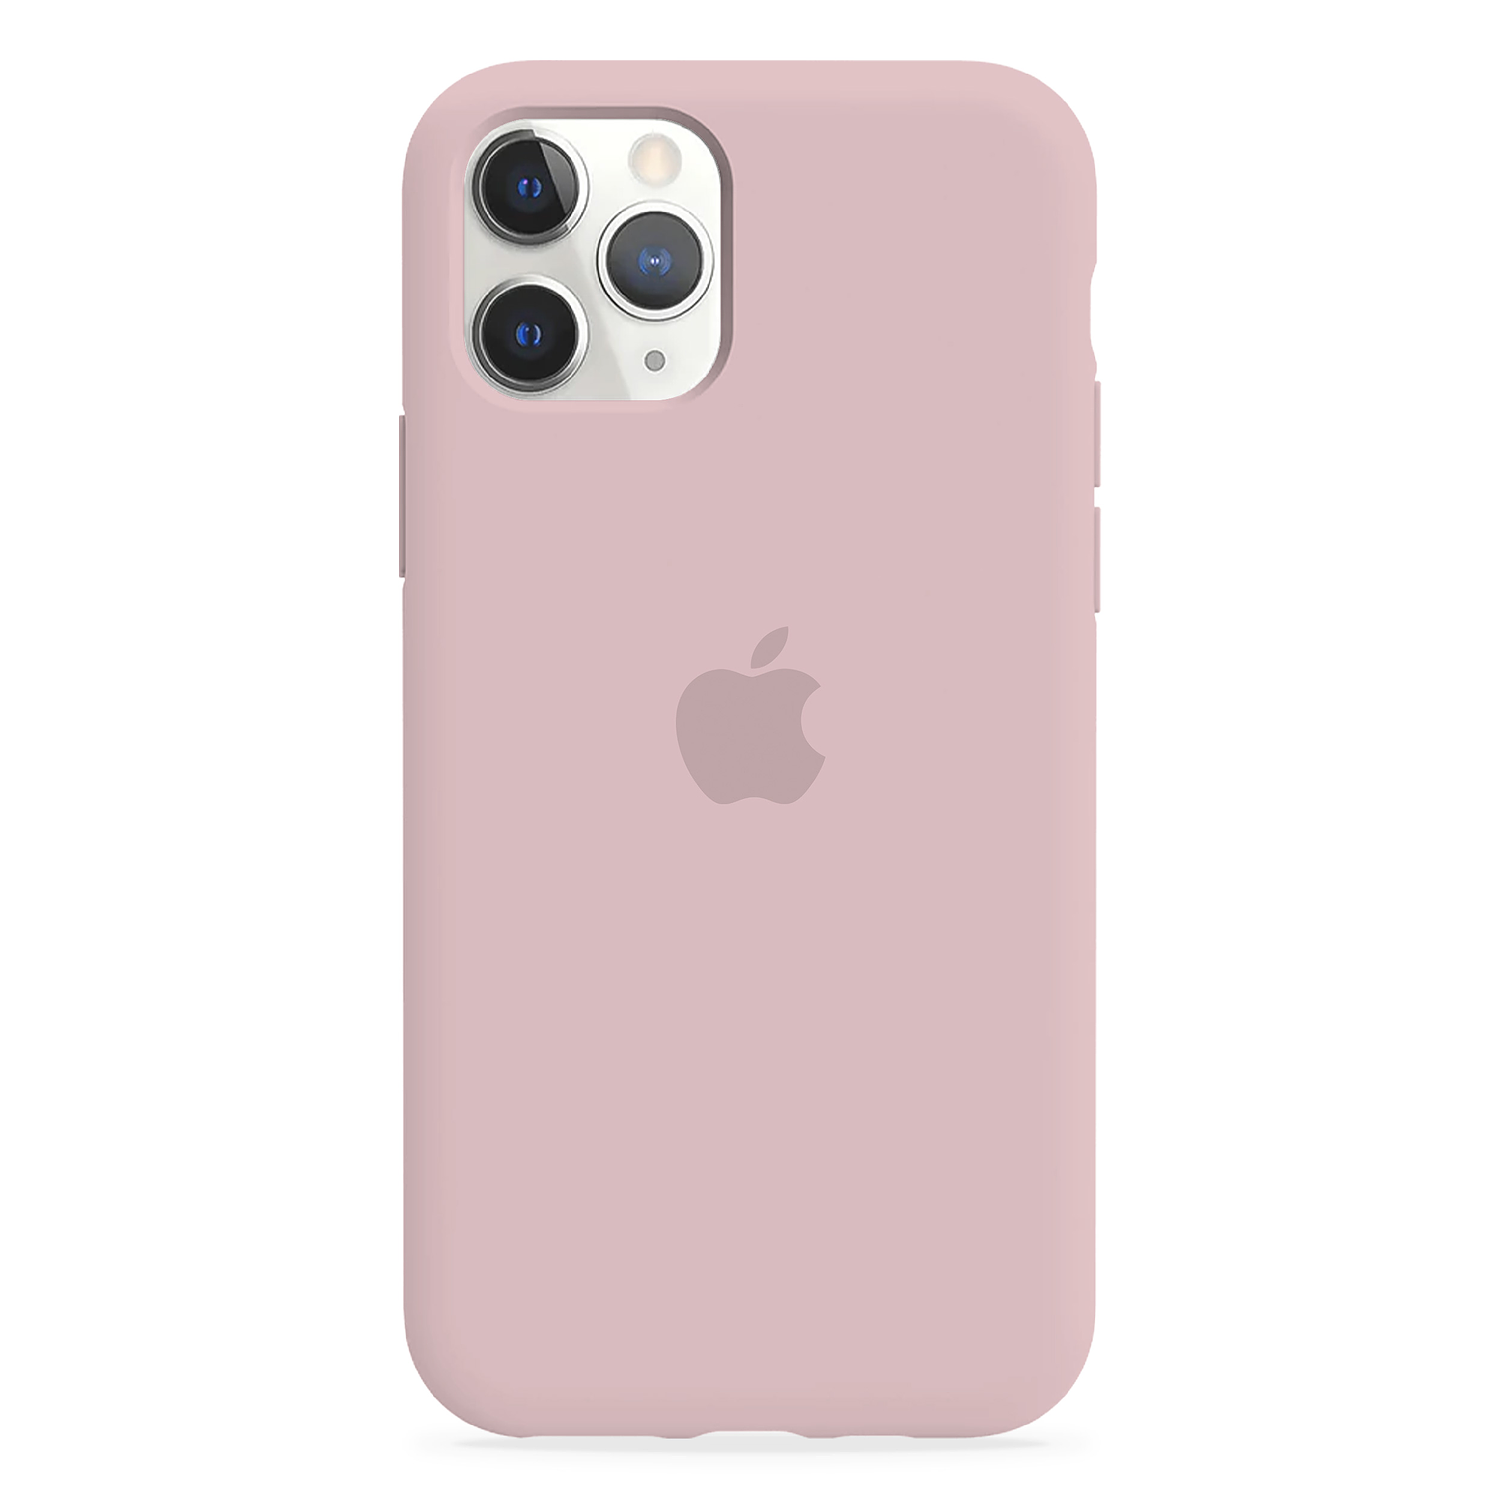 Carcasa de Silicona - iPhone 11 Pro Max 6